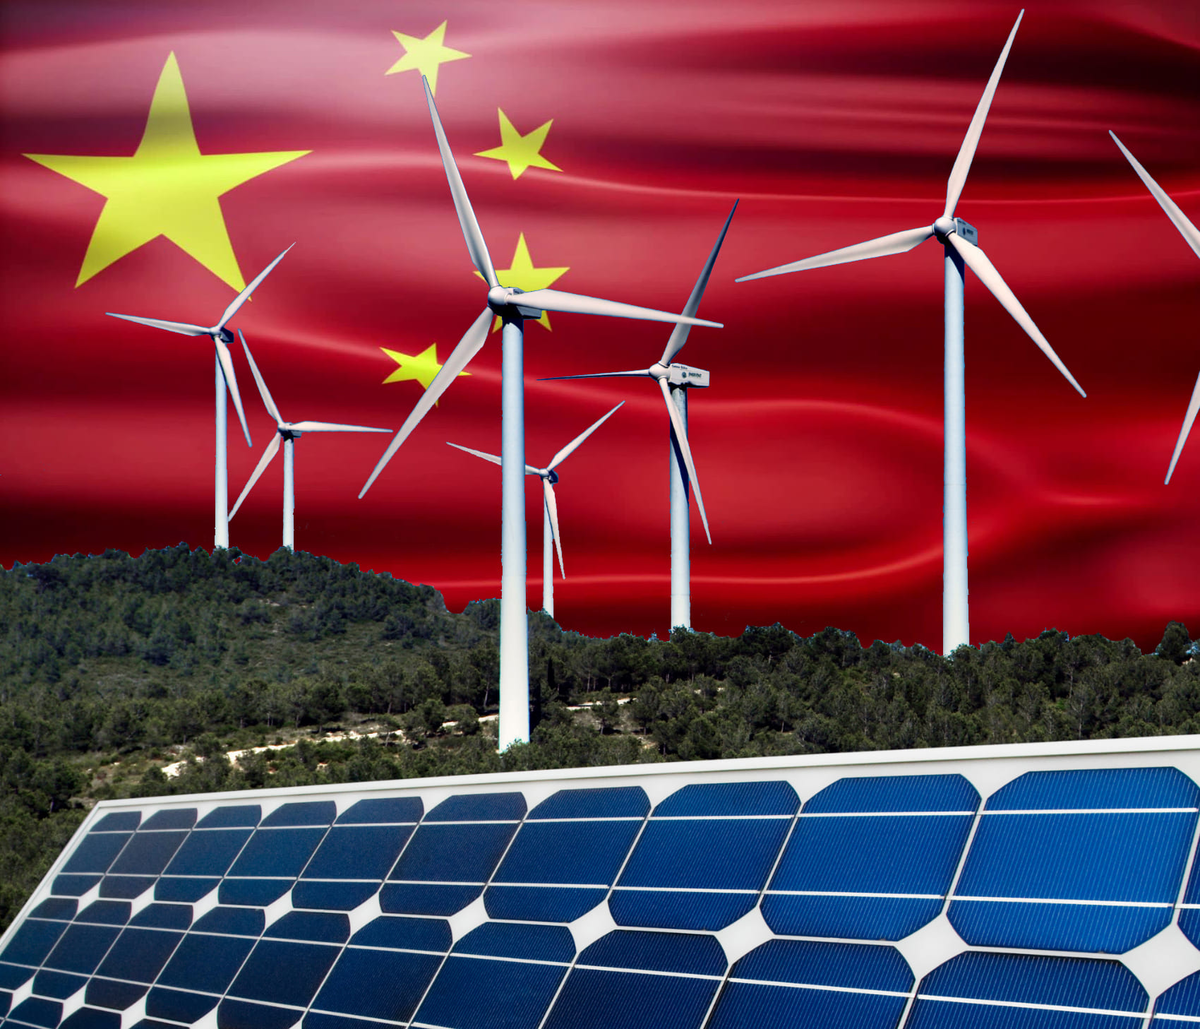 Энергетика кнр становится чистой все быстрее. Альтернативная Энергетика в Китае. Возобновляемая Энергетика Китая. Солнечная энергия в Китае. Китай зеленая Энергетика.